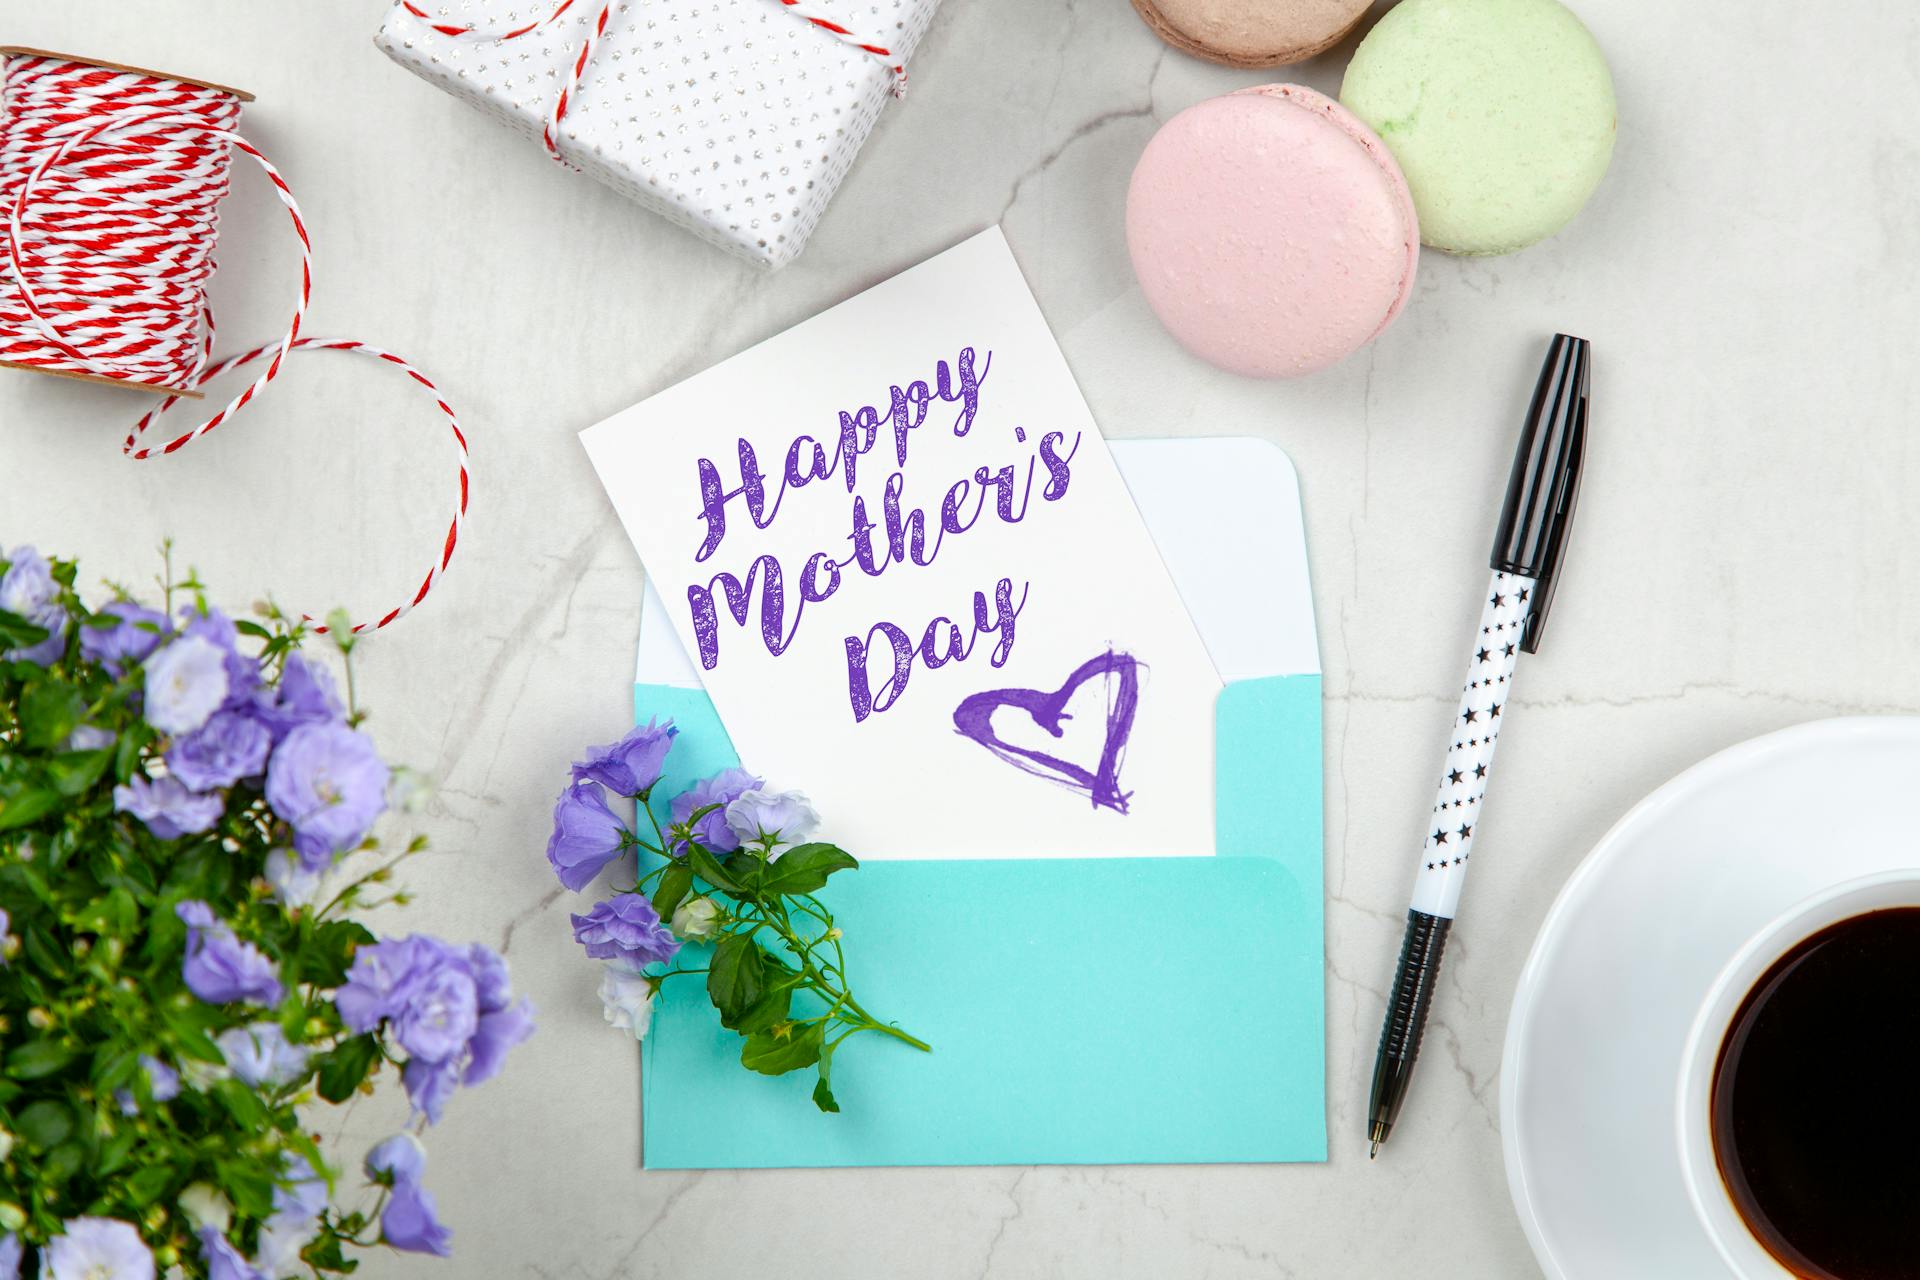 Eine Muttertagskarte neben einem Stift, Makronen, Blumen und einer Schachtel neben einer Kaffeetasse mit Untertasse | Quelle: Pexels